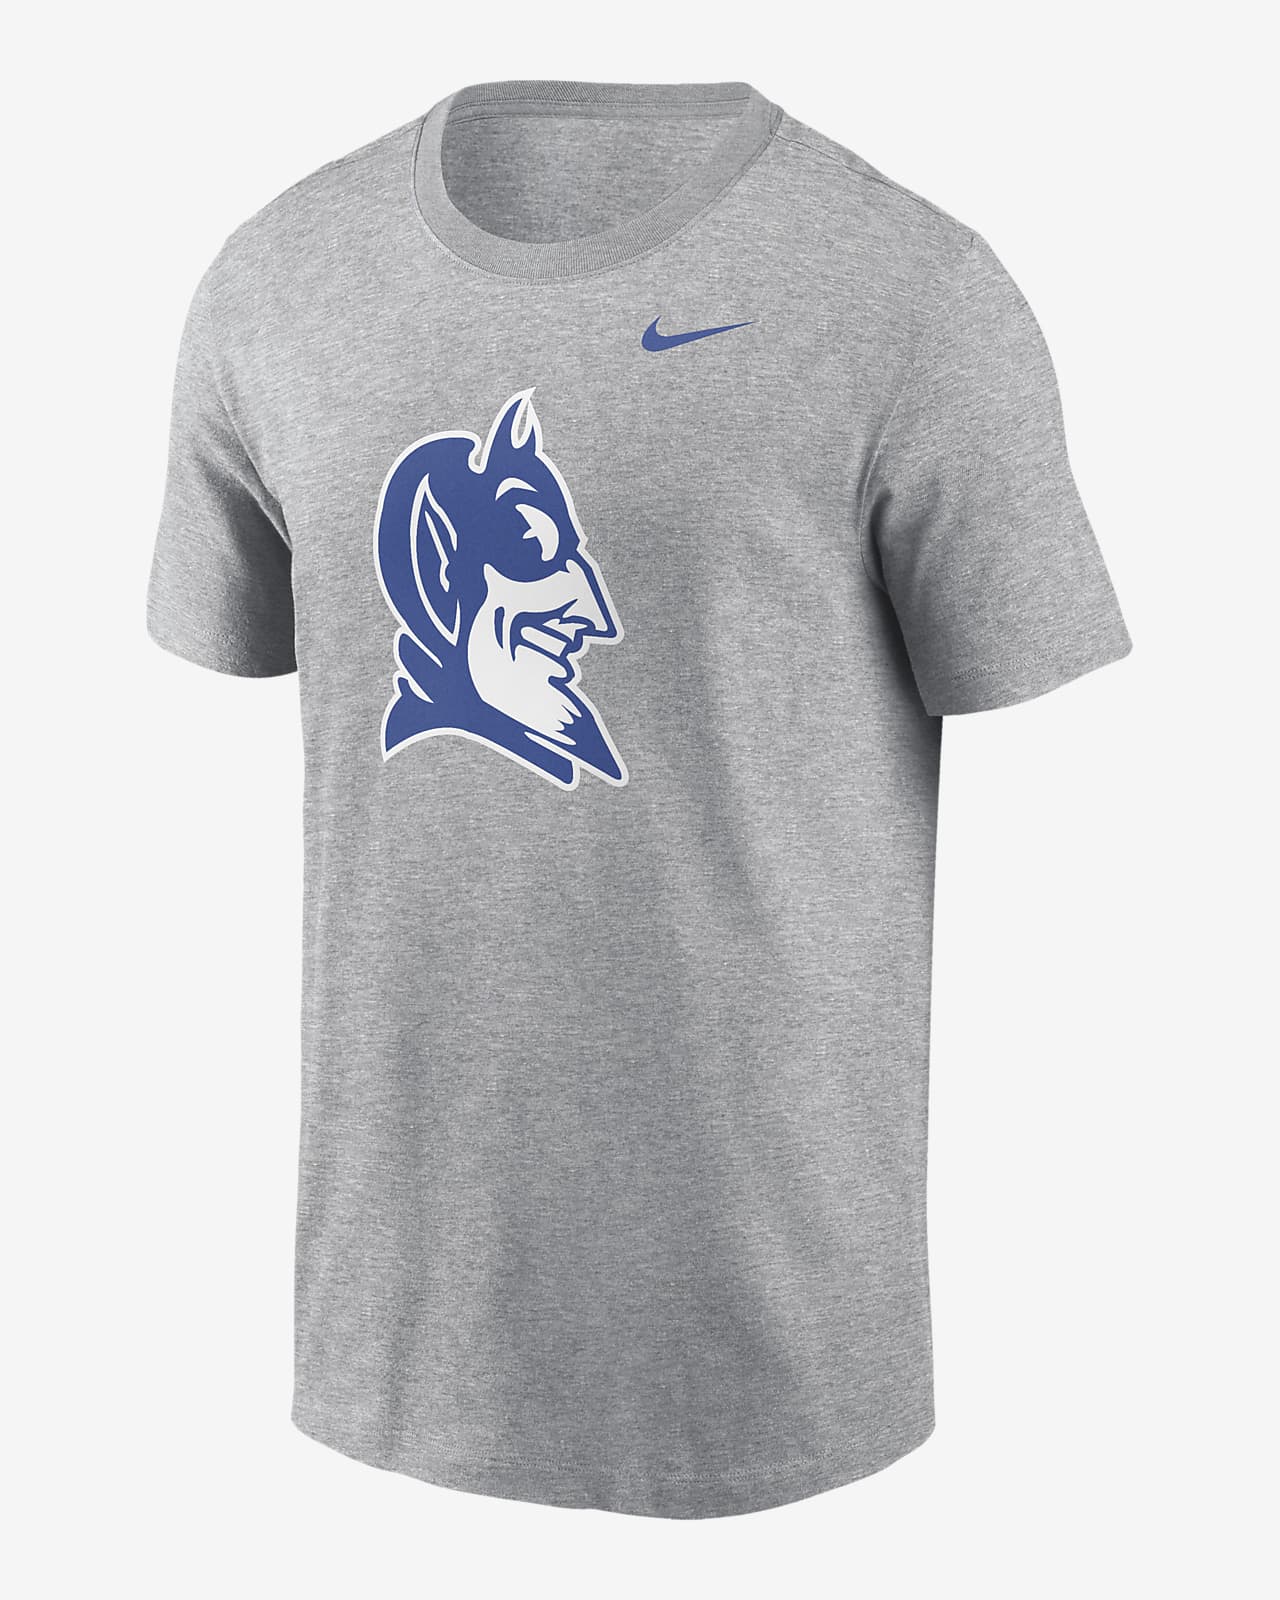 Duke Blue Devils Primetime Evergreen Alternate Logo Men's Nike College T-Shirt